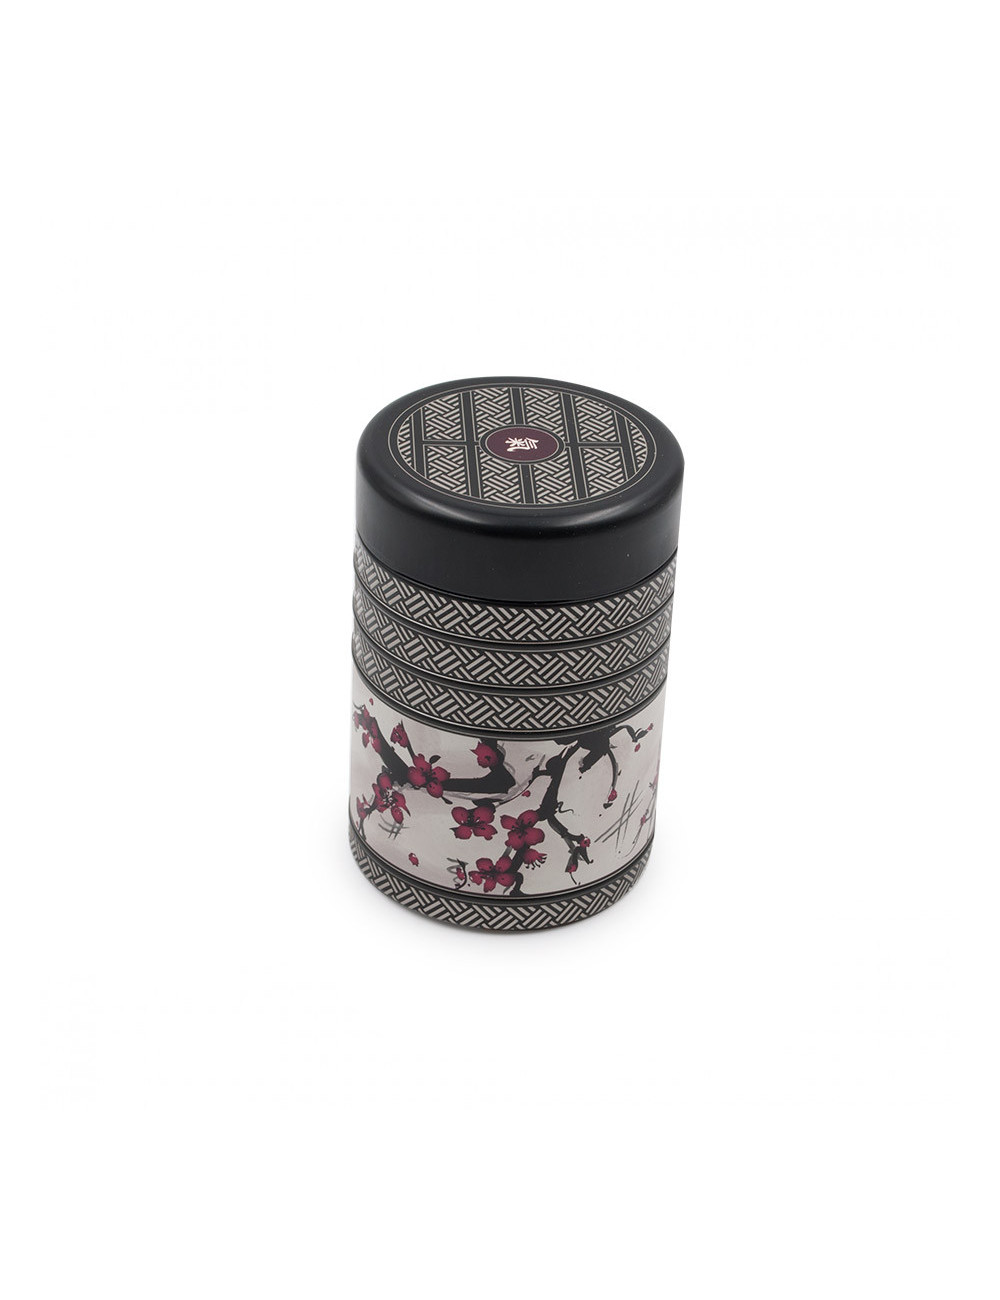 Barattolo porta tè in latta da 125 gr nero con fiori di ciliegio - La Pianta del Tè acquista online